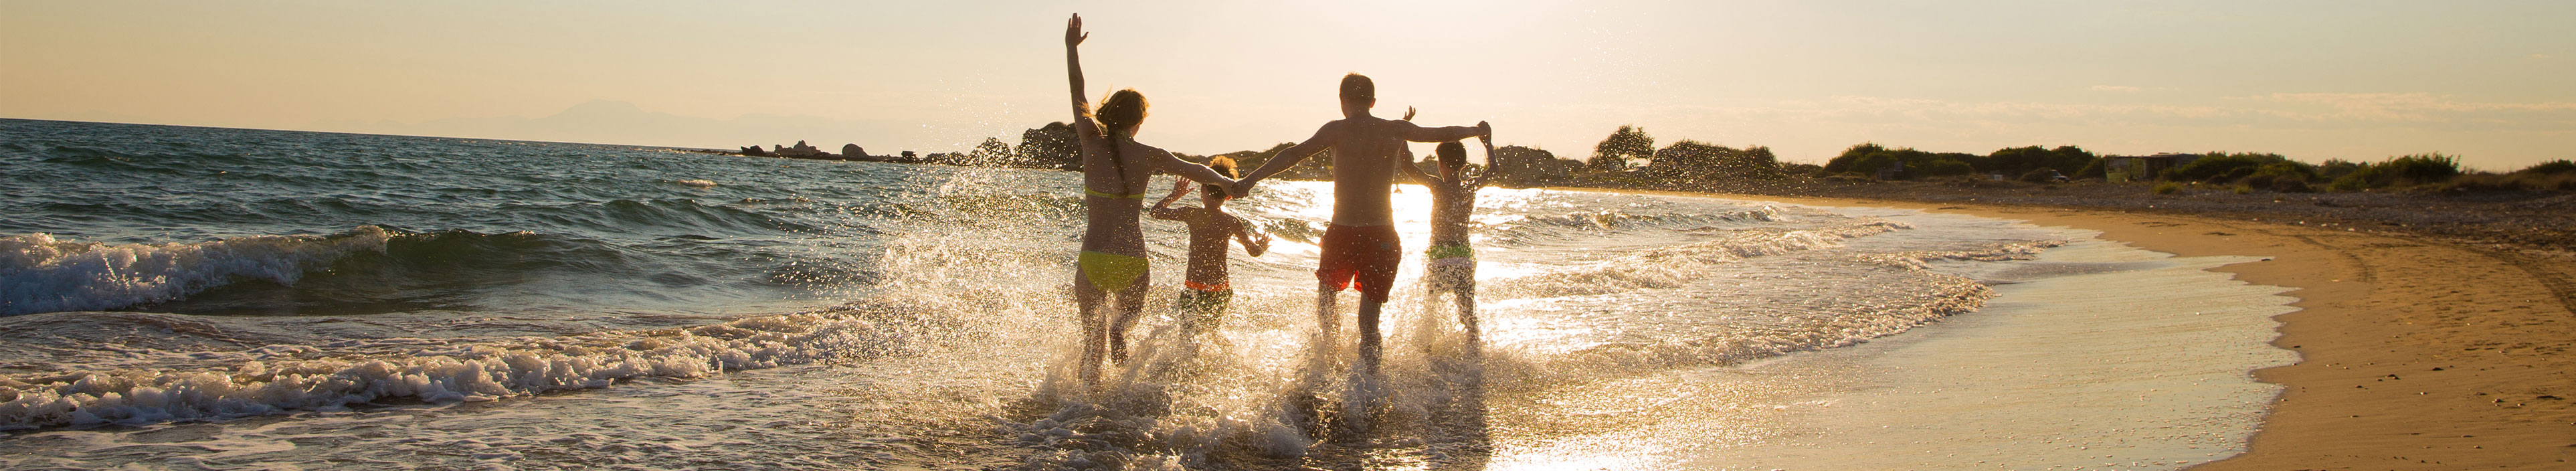 Eine Family läuft am Strand während des Sonnenuntergangs.